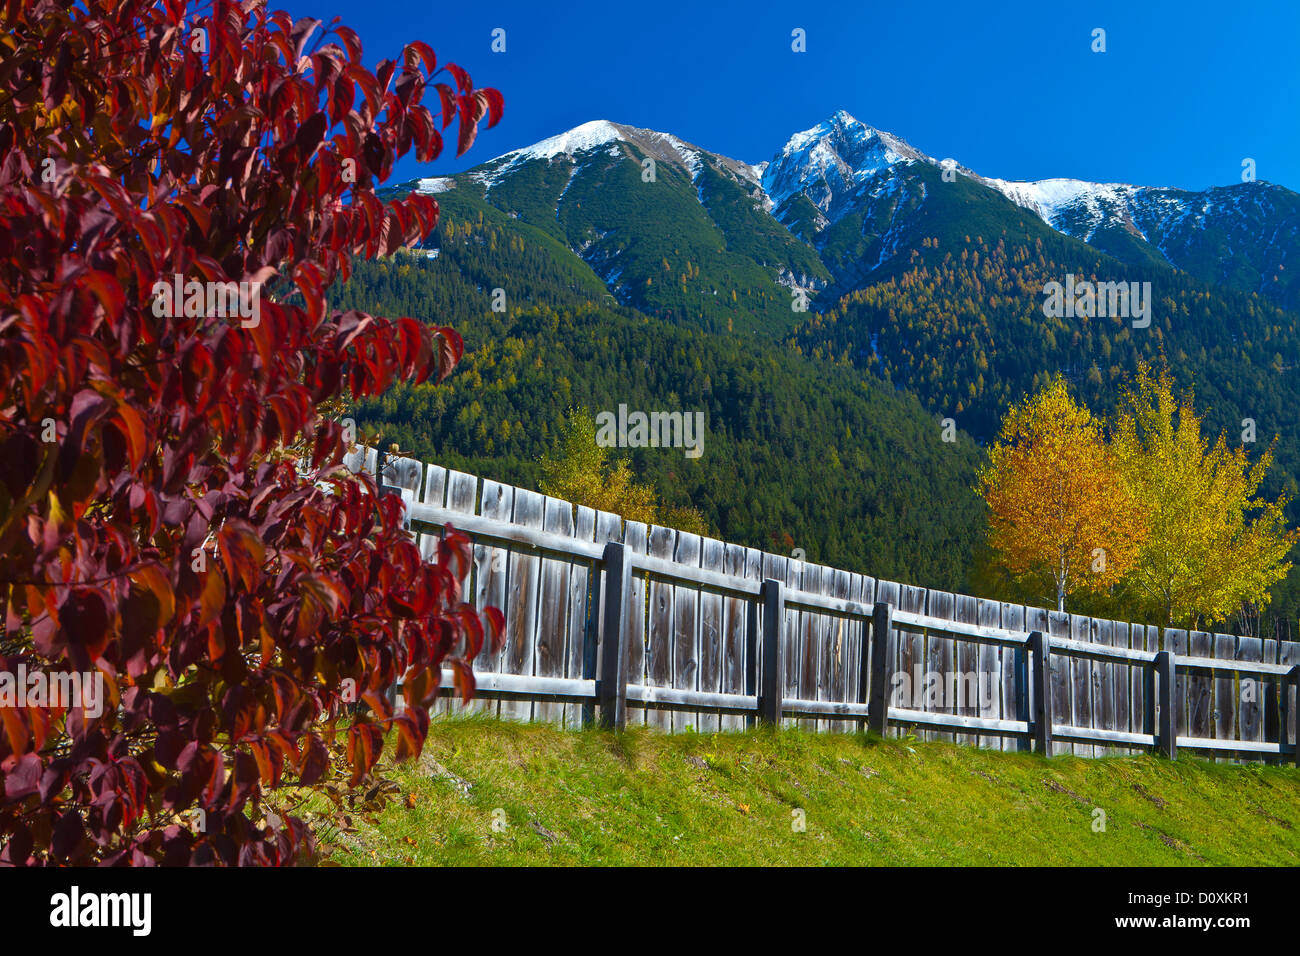 Austria, Europe, Tyrol, Tirol, Seefeld, Reither Spitzer, Reither, point, peak, Karwendel, fence, Red, Yellow, green, meadow, mou Stock Photo